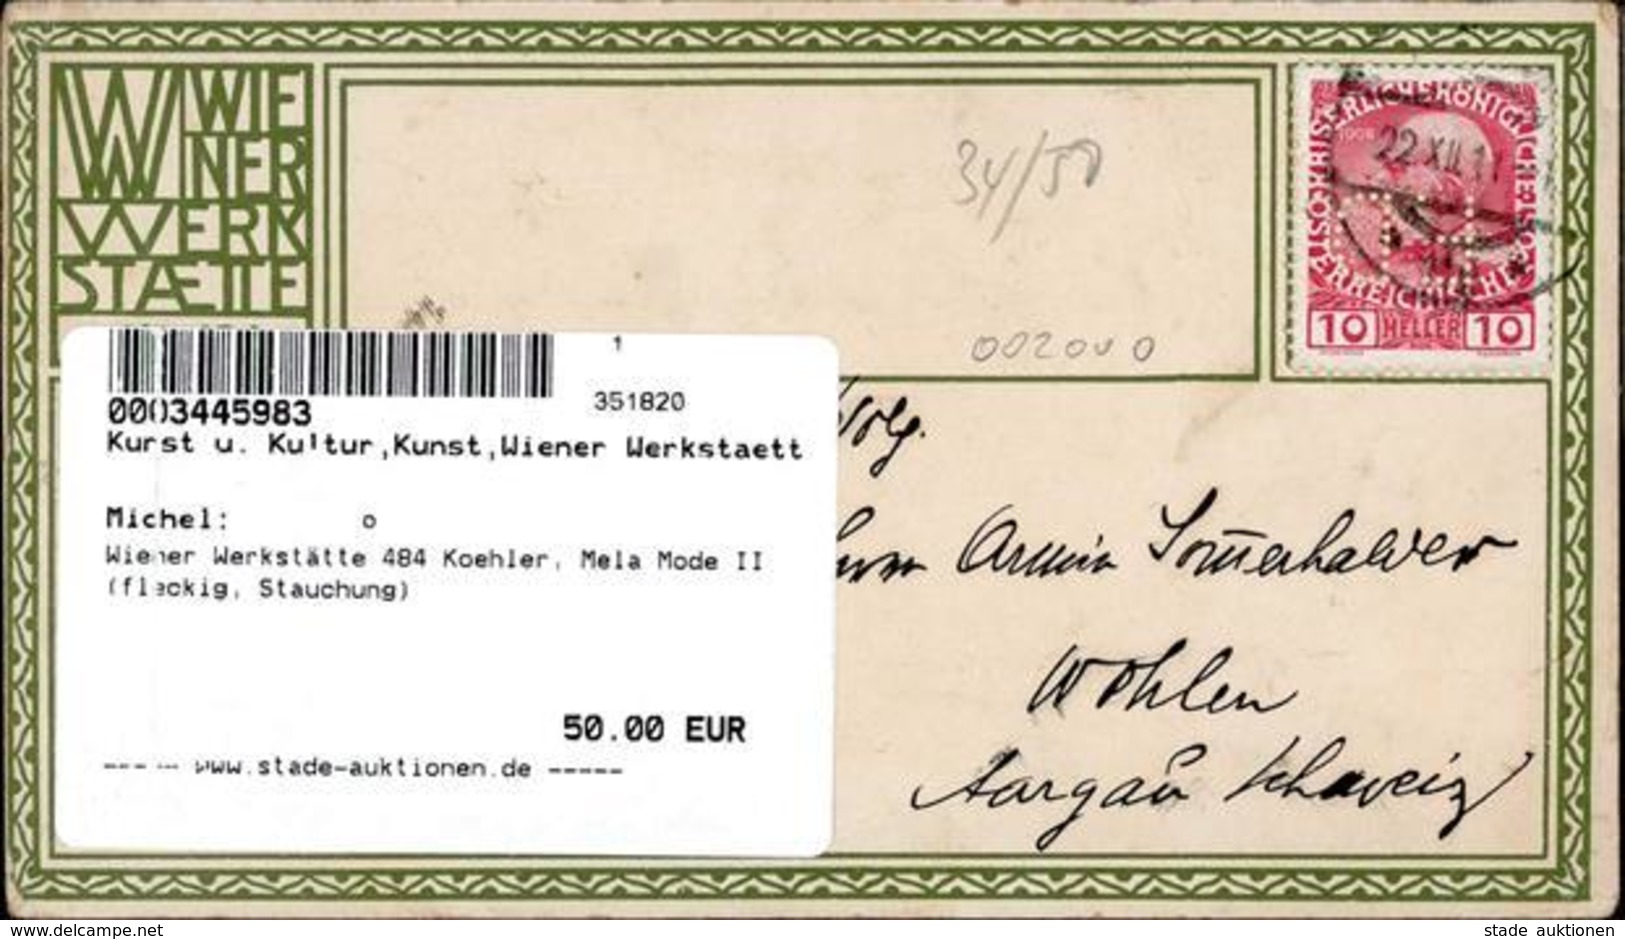 Wiener Werkstätte 484 Koehler, Mela Mode II (fleckig, Stauchung) - Kokoschka